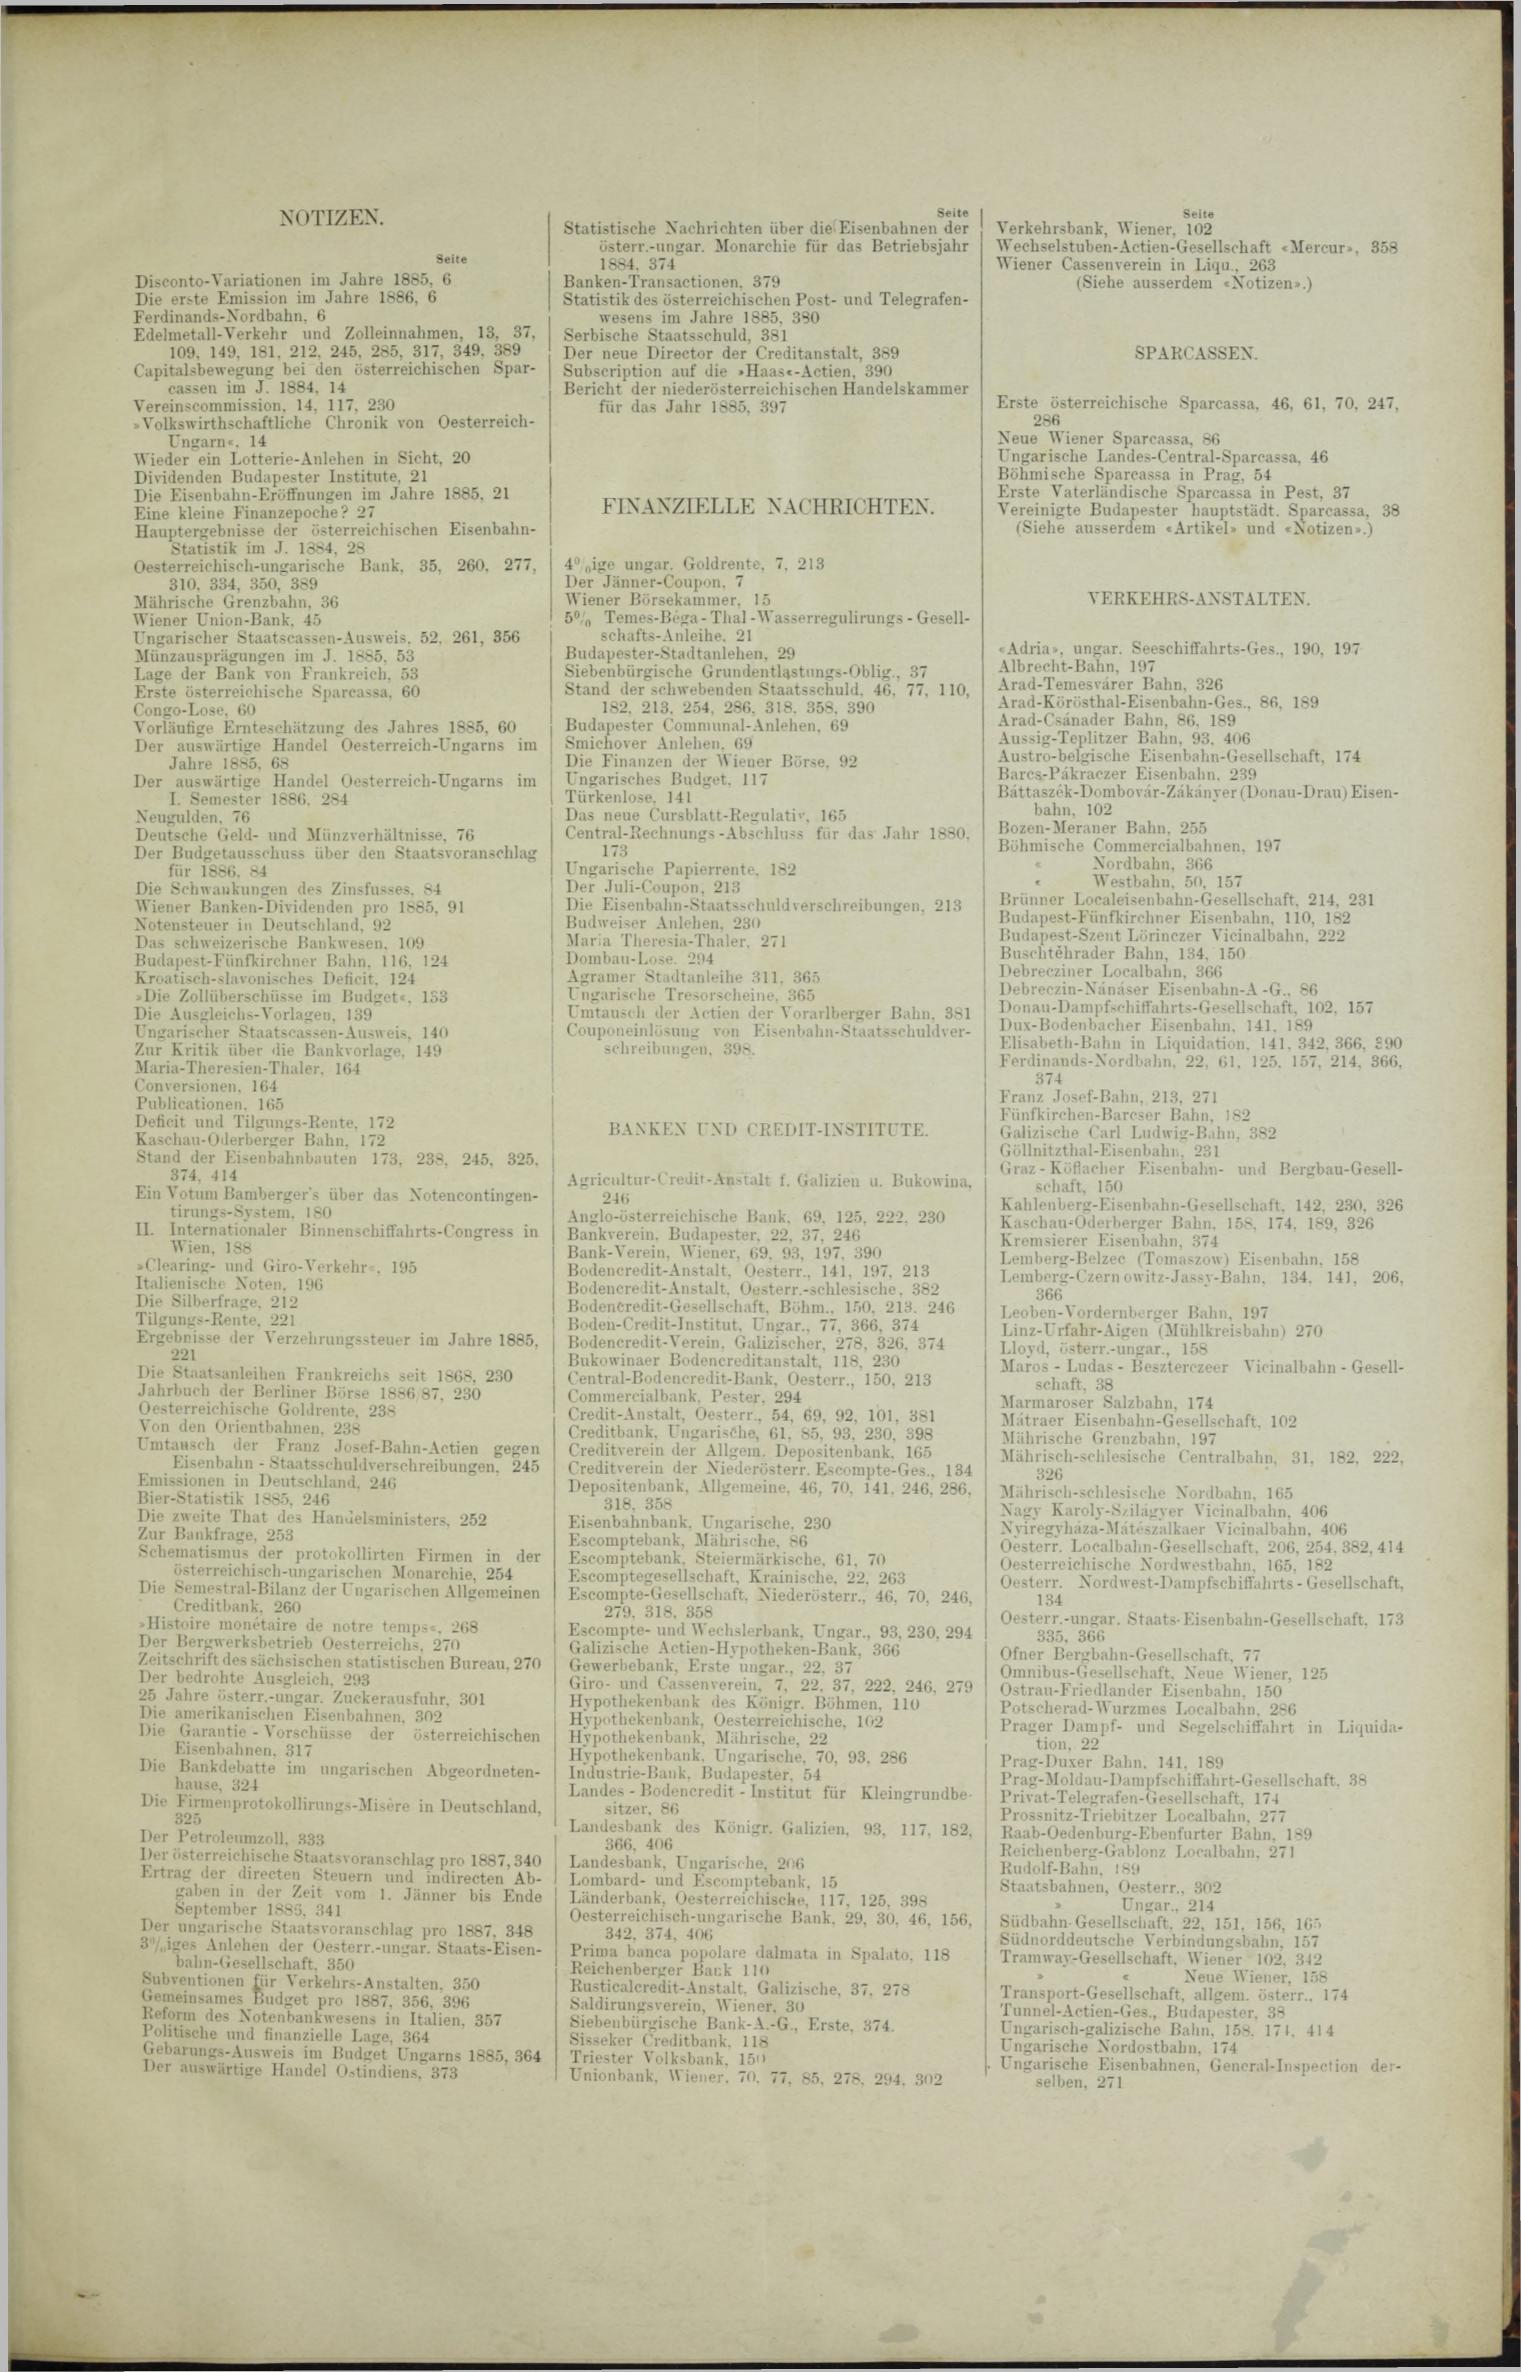 Der Tresor 01.07.1886 - Seite 11